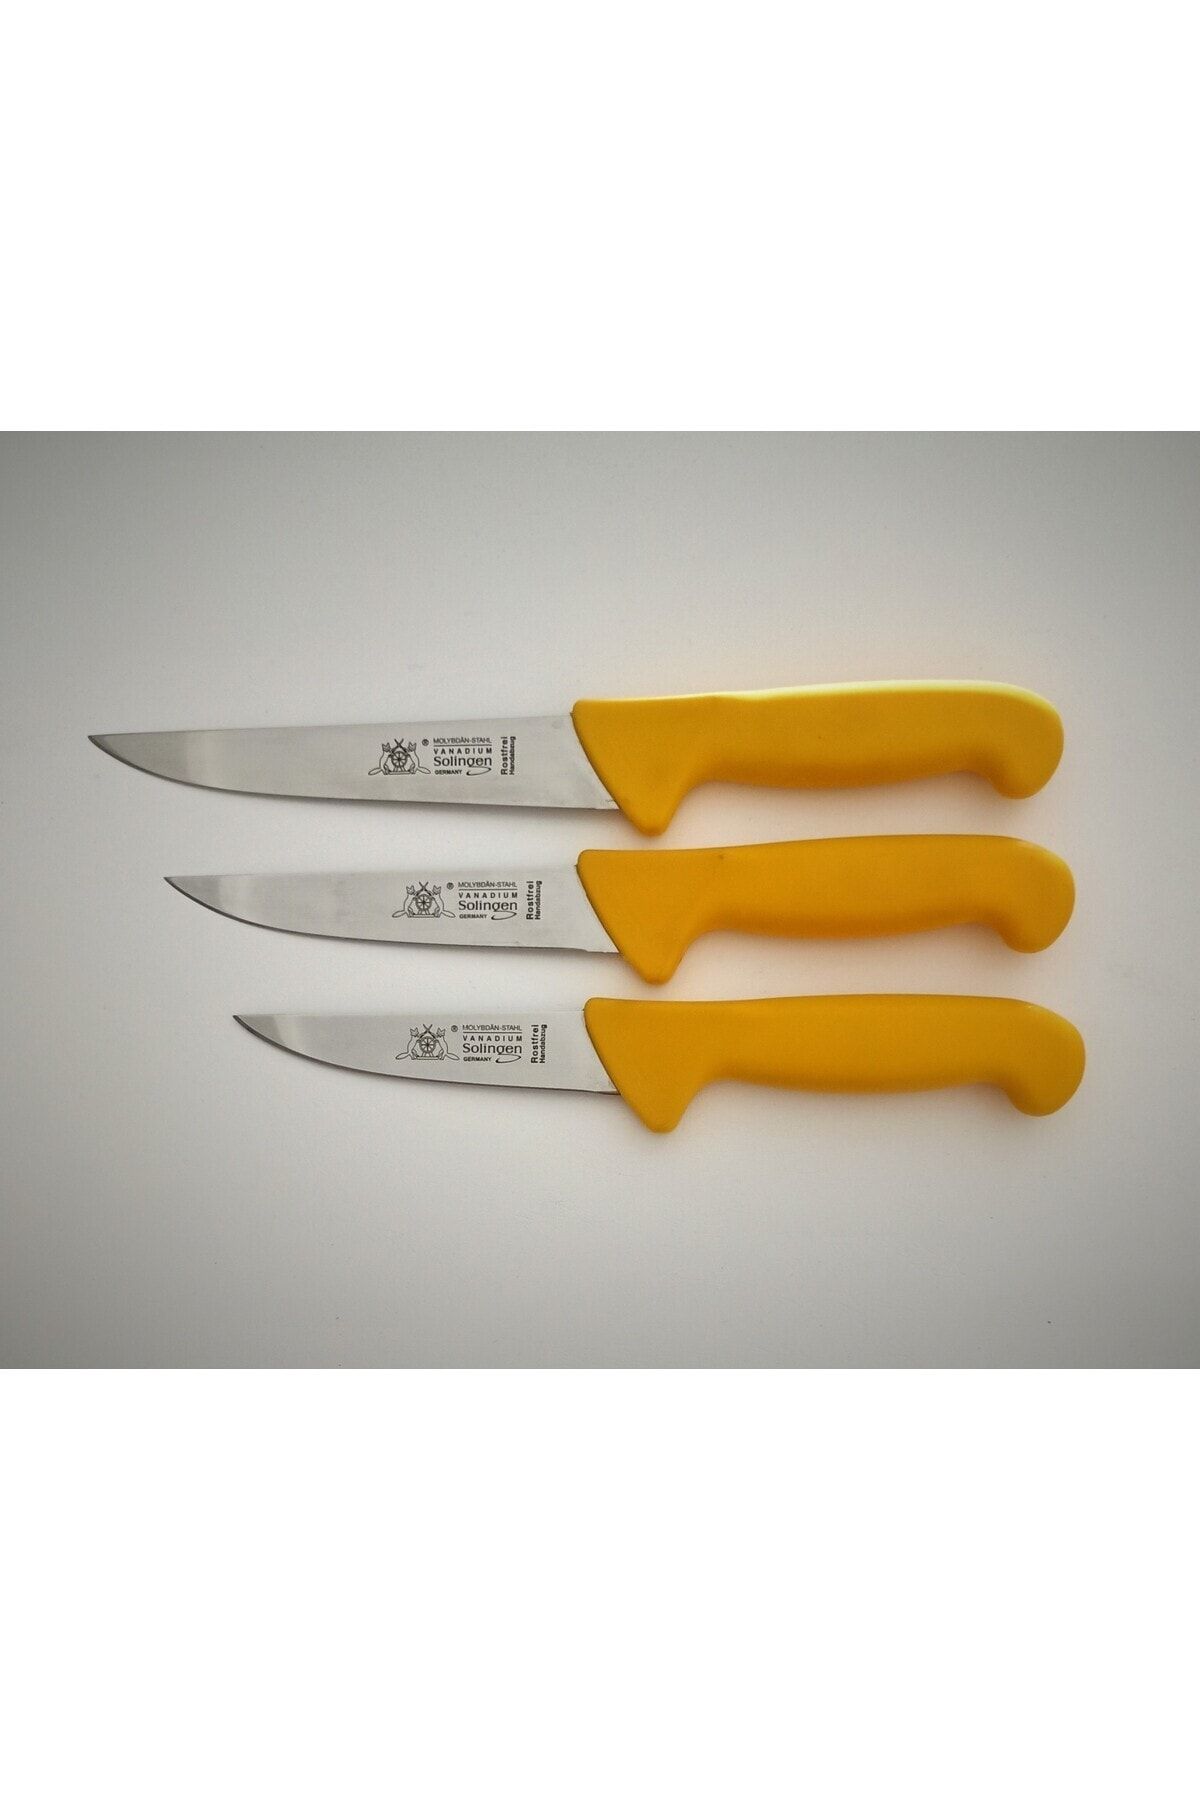 Solingen Max Melchıor Et Doğrama Kasap bıçağı 3'lü set Sarı